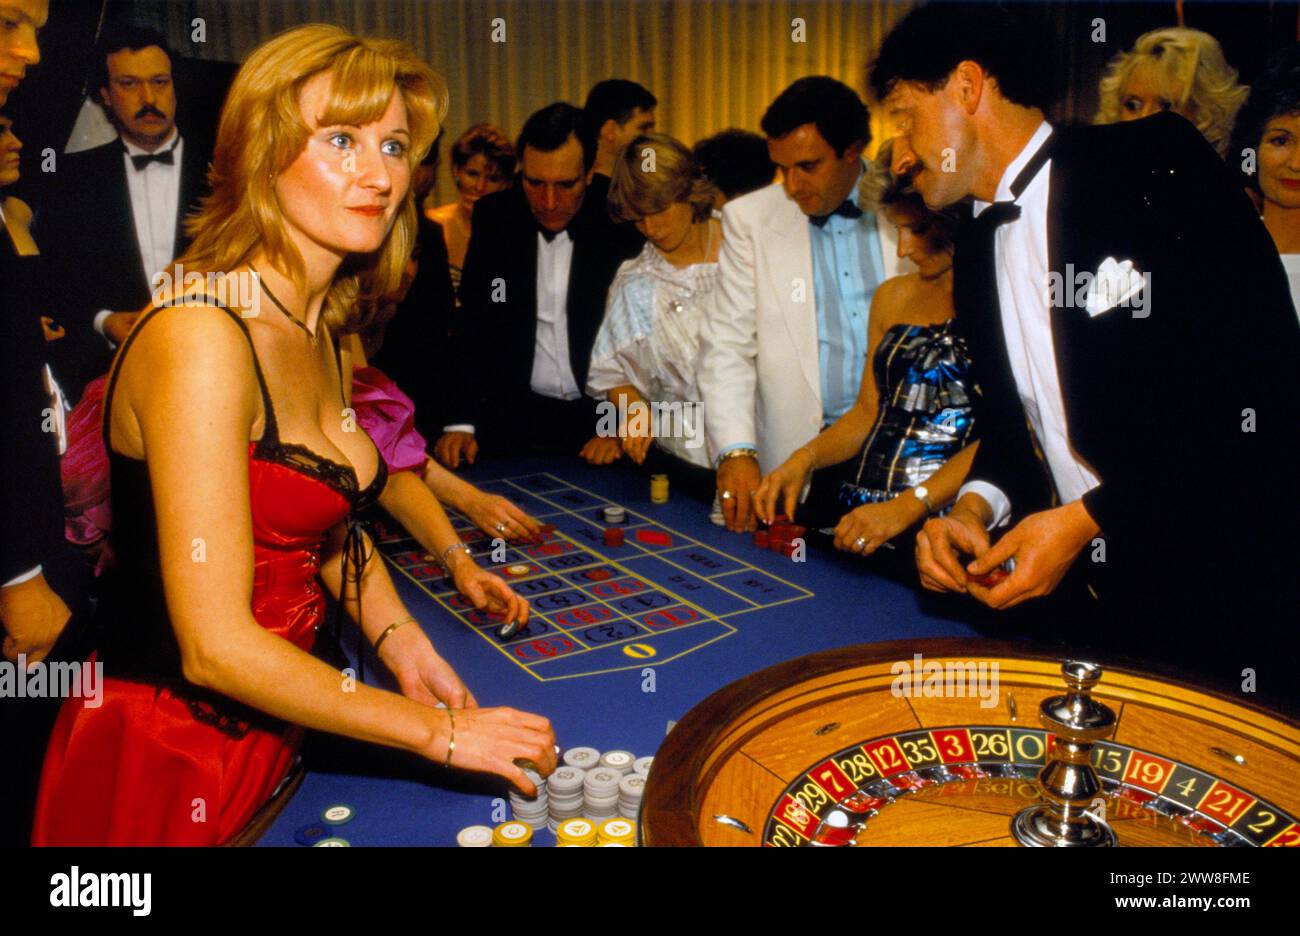 Croupierin, die ein burleskes Korsett trägt baskenmenschen, die Roulette spielen, in Großbritannien spielen, beim jährlichen SPARKS BENEFIZBALL im Hilton Hotel. London, England ca. Dezember 1992. 1990er Jahre UK HOMER SYKESotel. Stockfoto